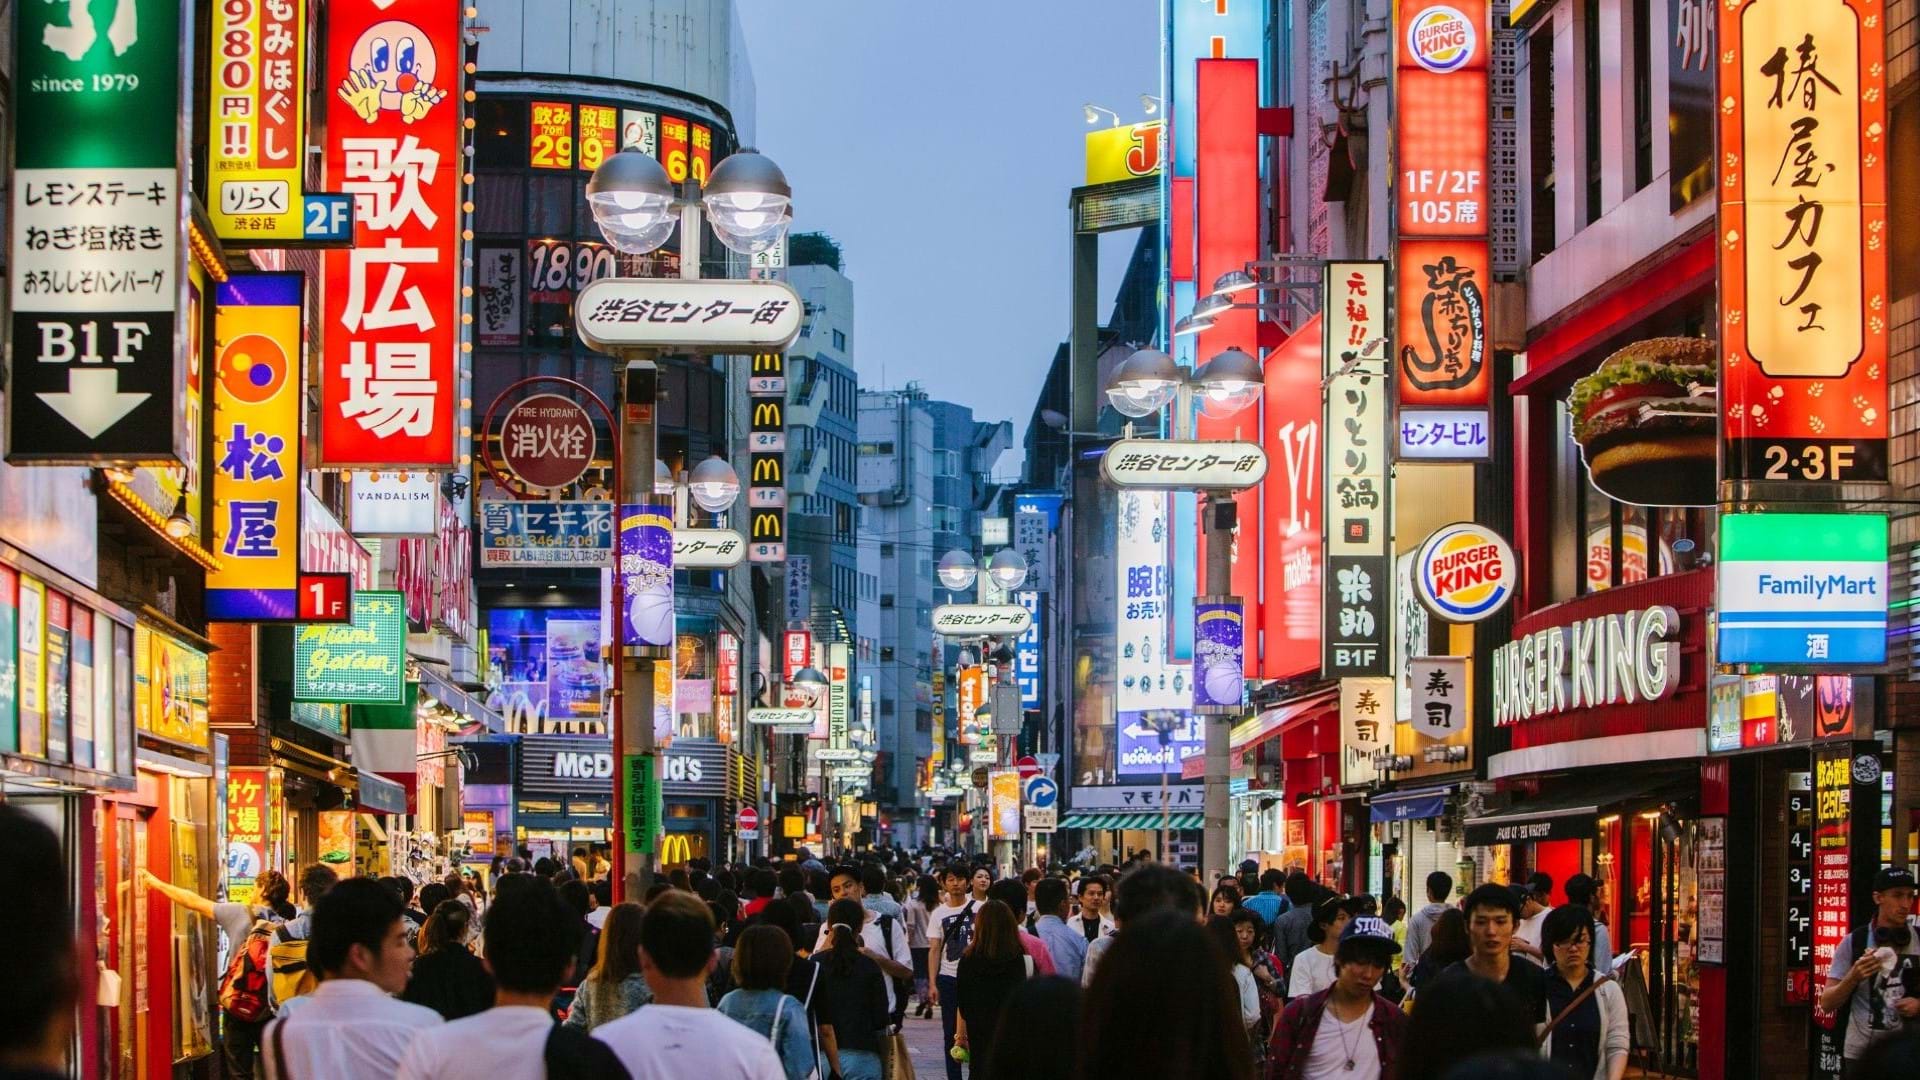 Tokio, jedna od poznatih ulica sa mnogobrojnim restoranima i mnogo svetlećih reklama na fasadama zgrada